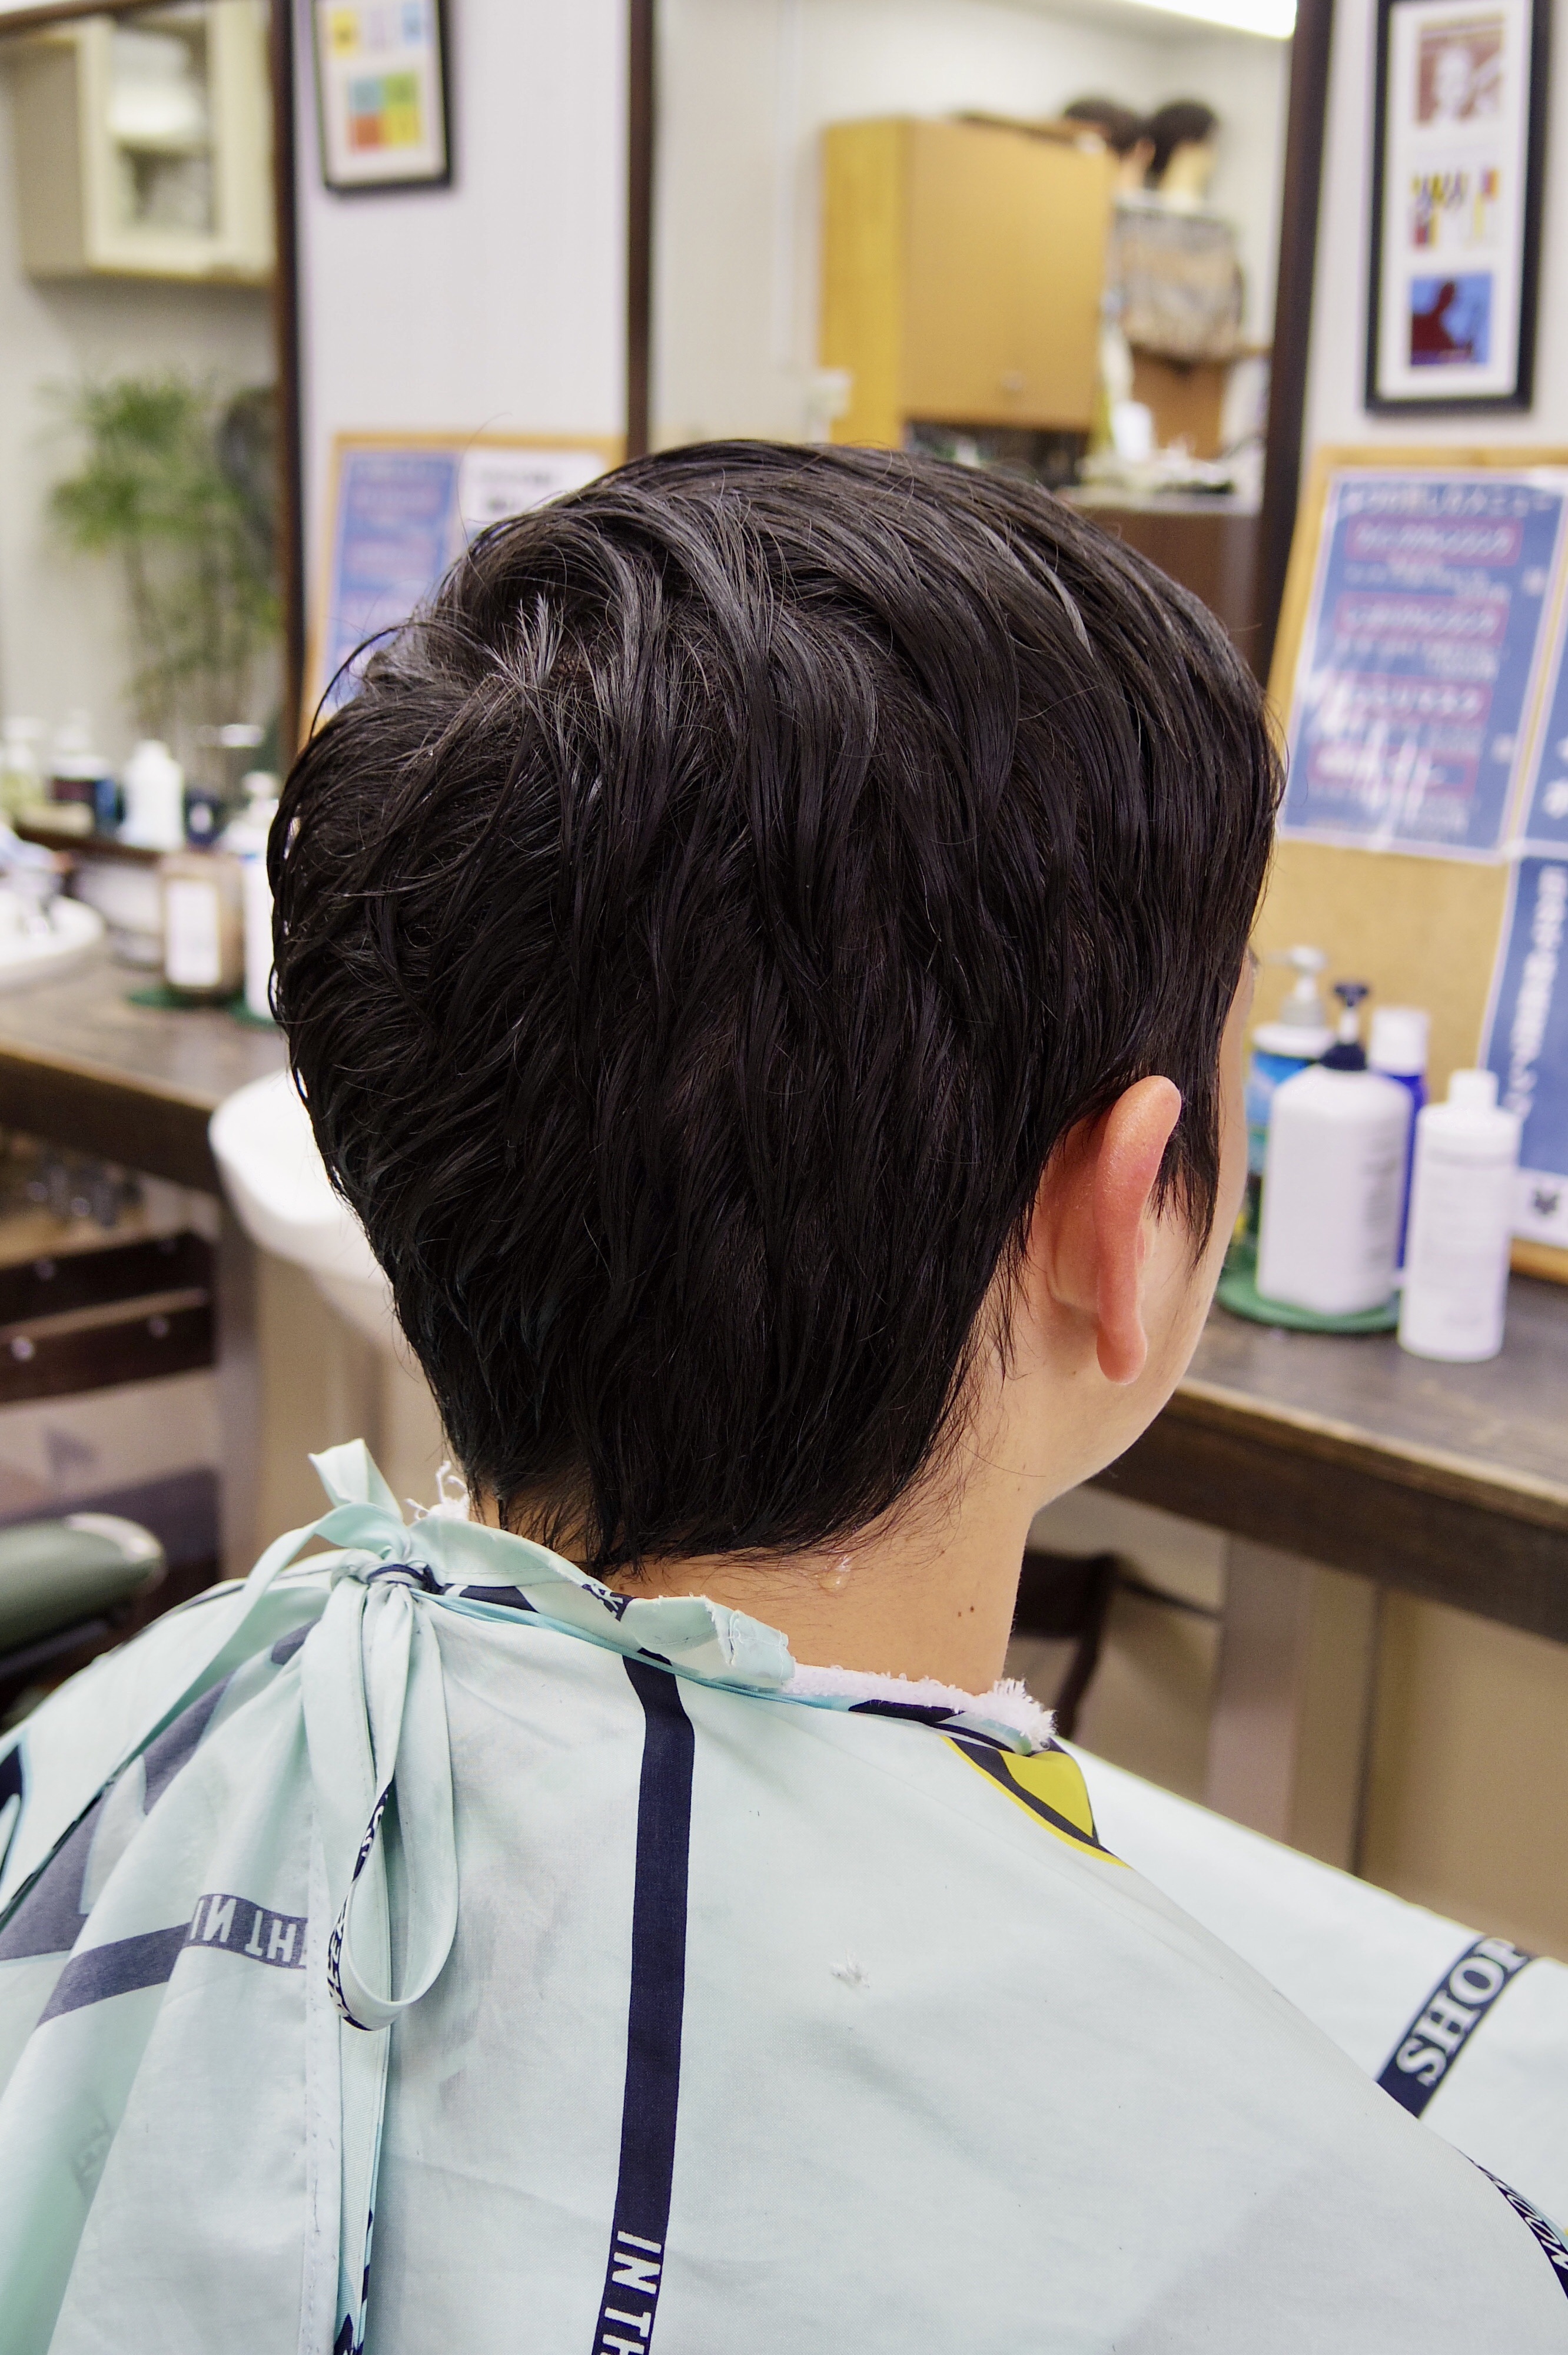 髪型 つむじの生えぐせマックスを活かす メンズカットメンズヘア 府中調布のbarber フェードカット 短髪 メンズショートが得意 Tashiro Mix Hair 武蔵野台白糸台